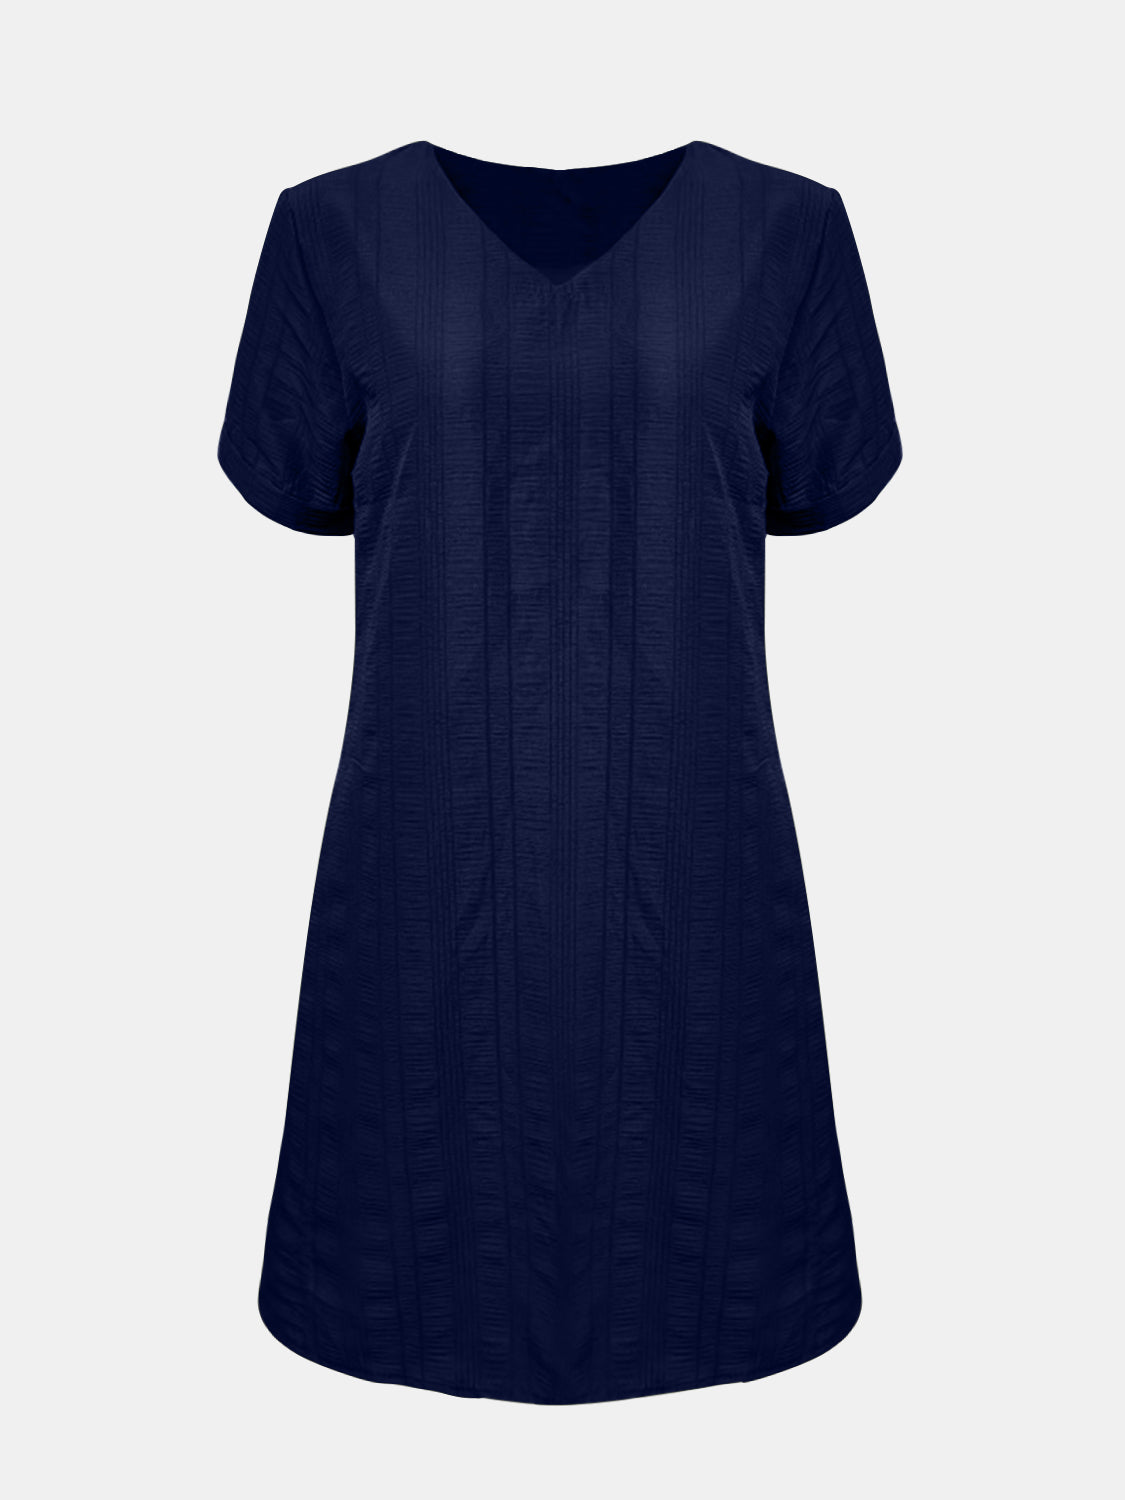 STUNNLY  Full Size V-Neck Short Sleeve Mini Dress   